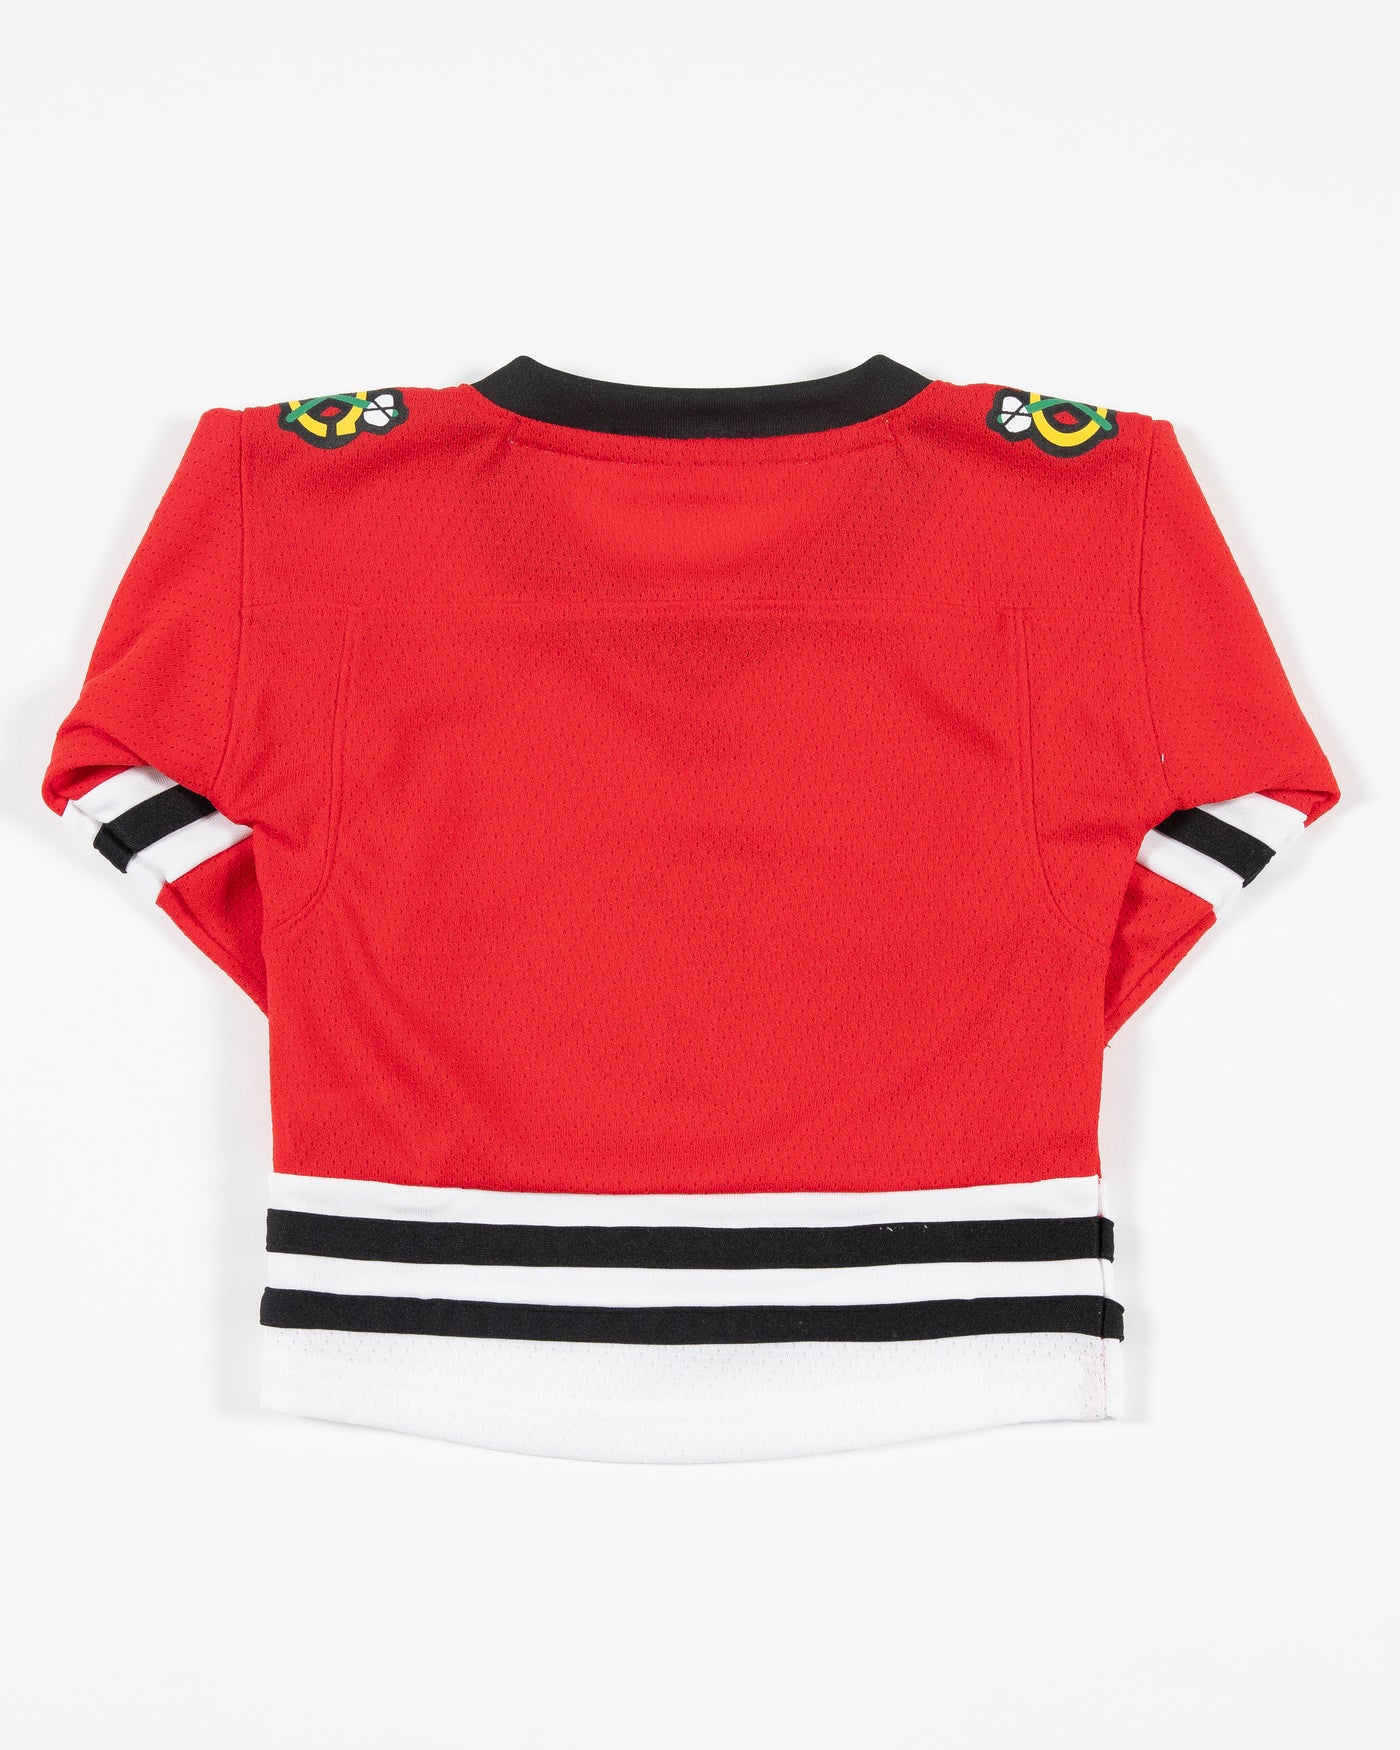 Infant Red Chicago Blackhawks Team Long Sleeve T-Shirt